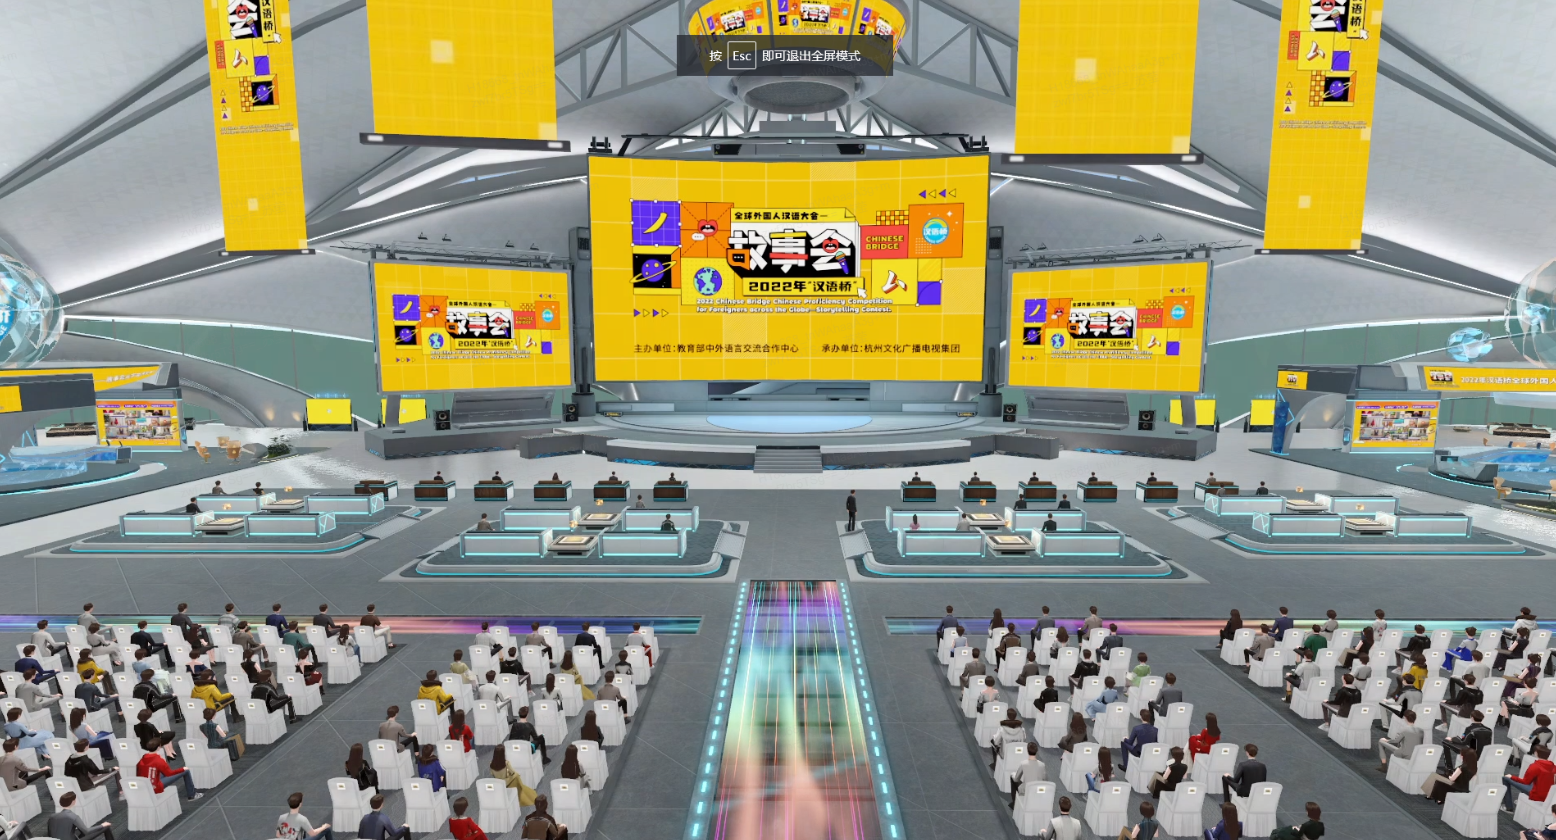 这张图片展示了一个现代化的室内场馆，有大屏幕、座椅排列整齐，场地中央有彩色光带，似乎是一个电子竞技比赛场所。